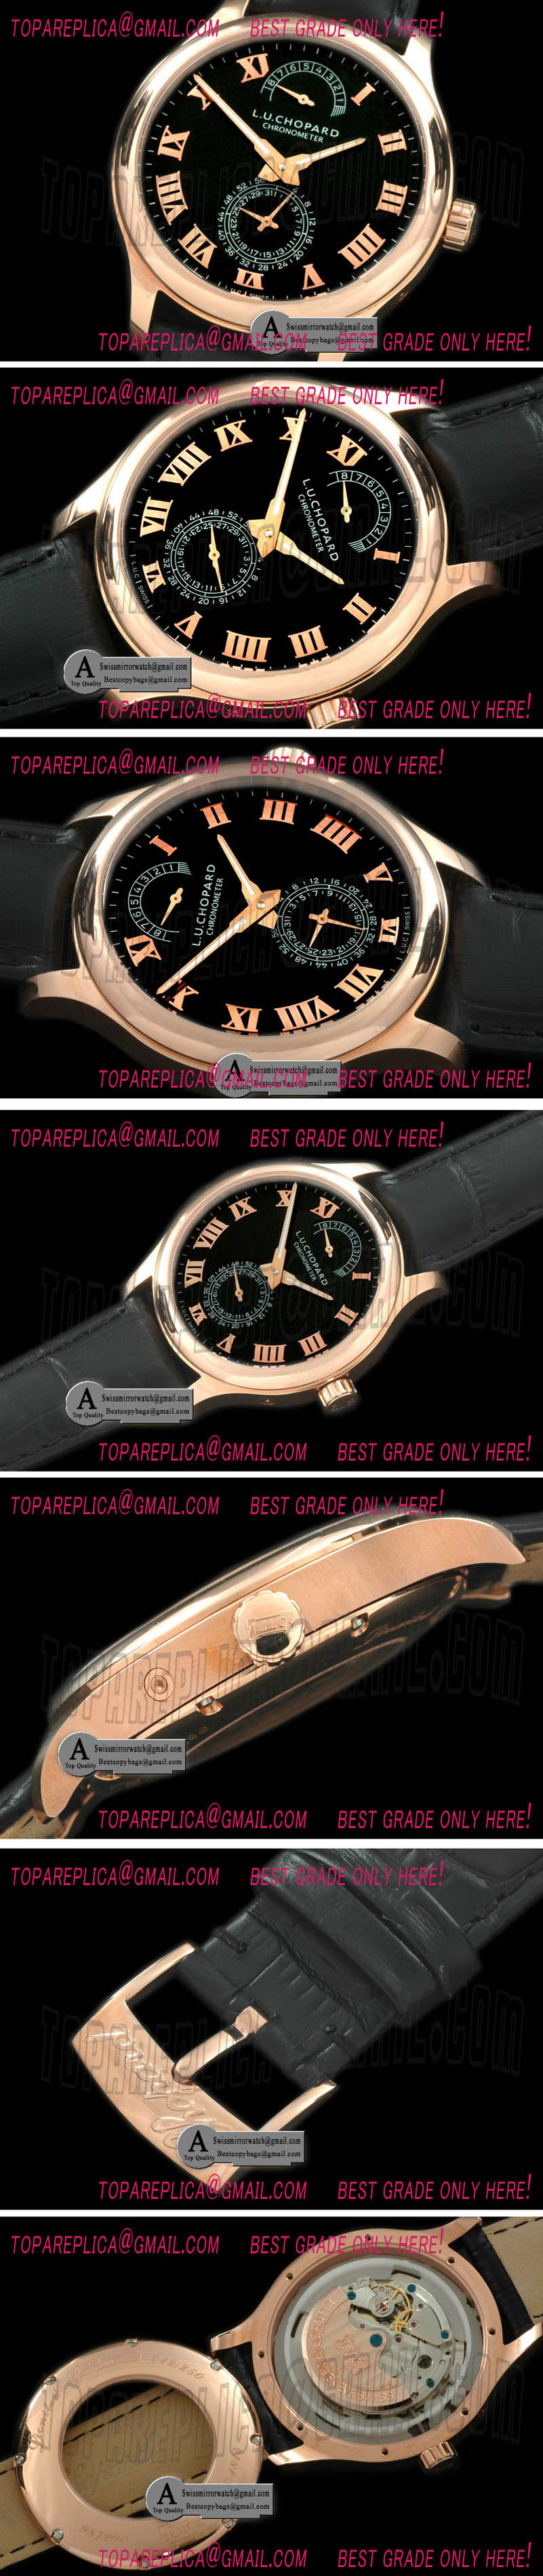 Chopard L.U.C Quattro 161926-5001 Reserve Rose Gold/Leather Black Asia 2813 Replica Watches